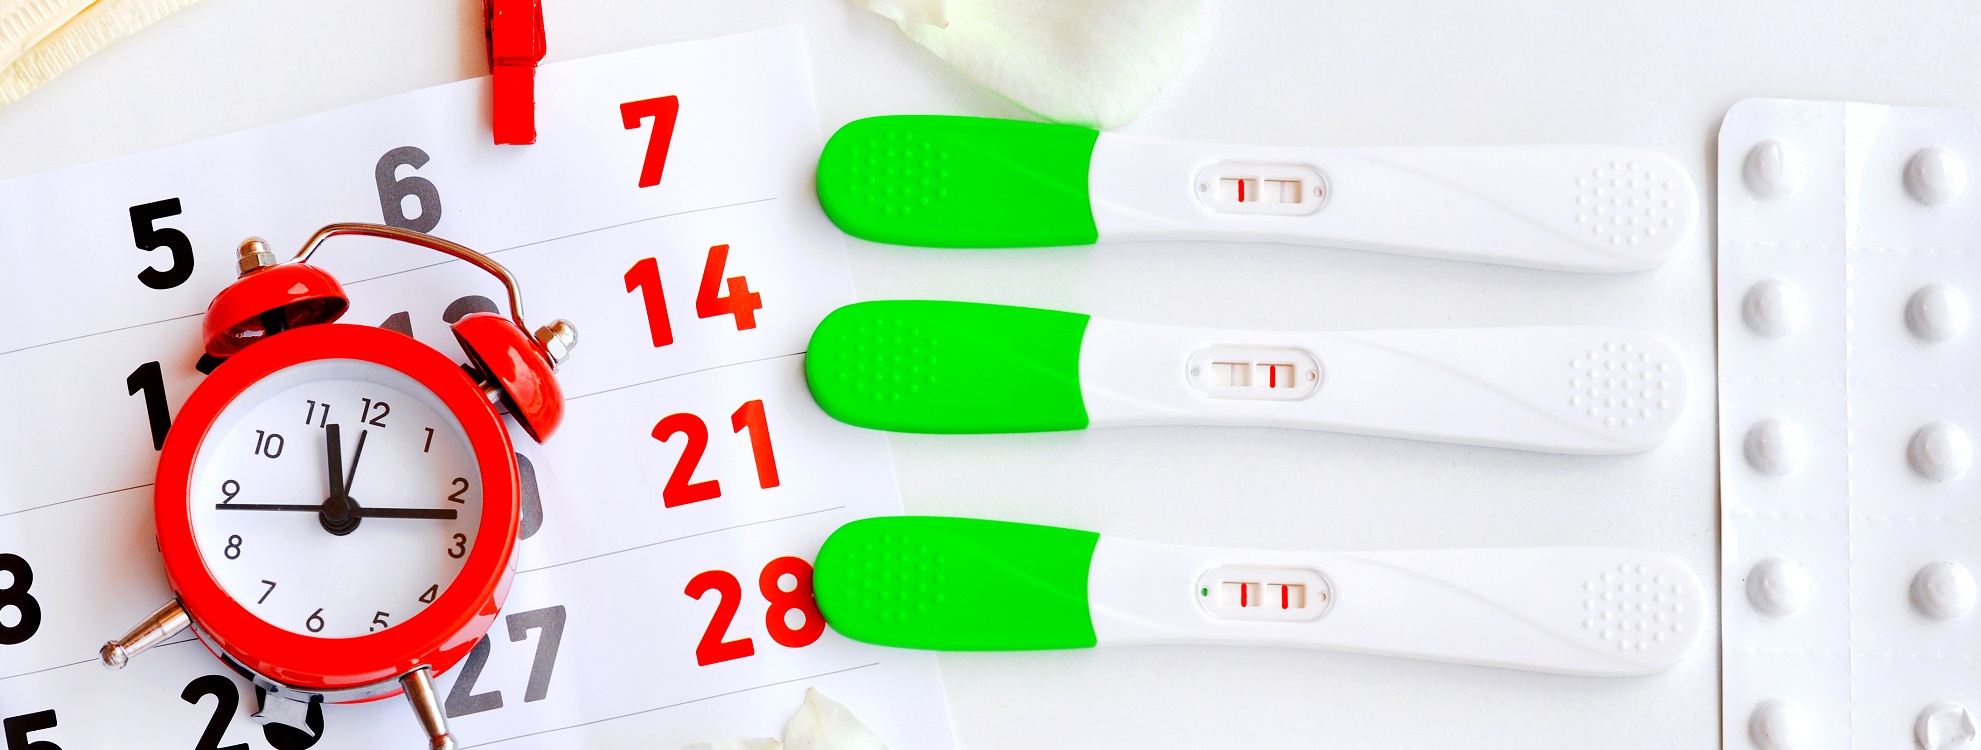 Rosa schwangerschaftstest leicht ᐅ Schwangerschaftstest